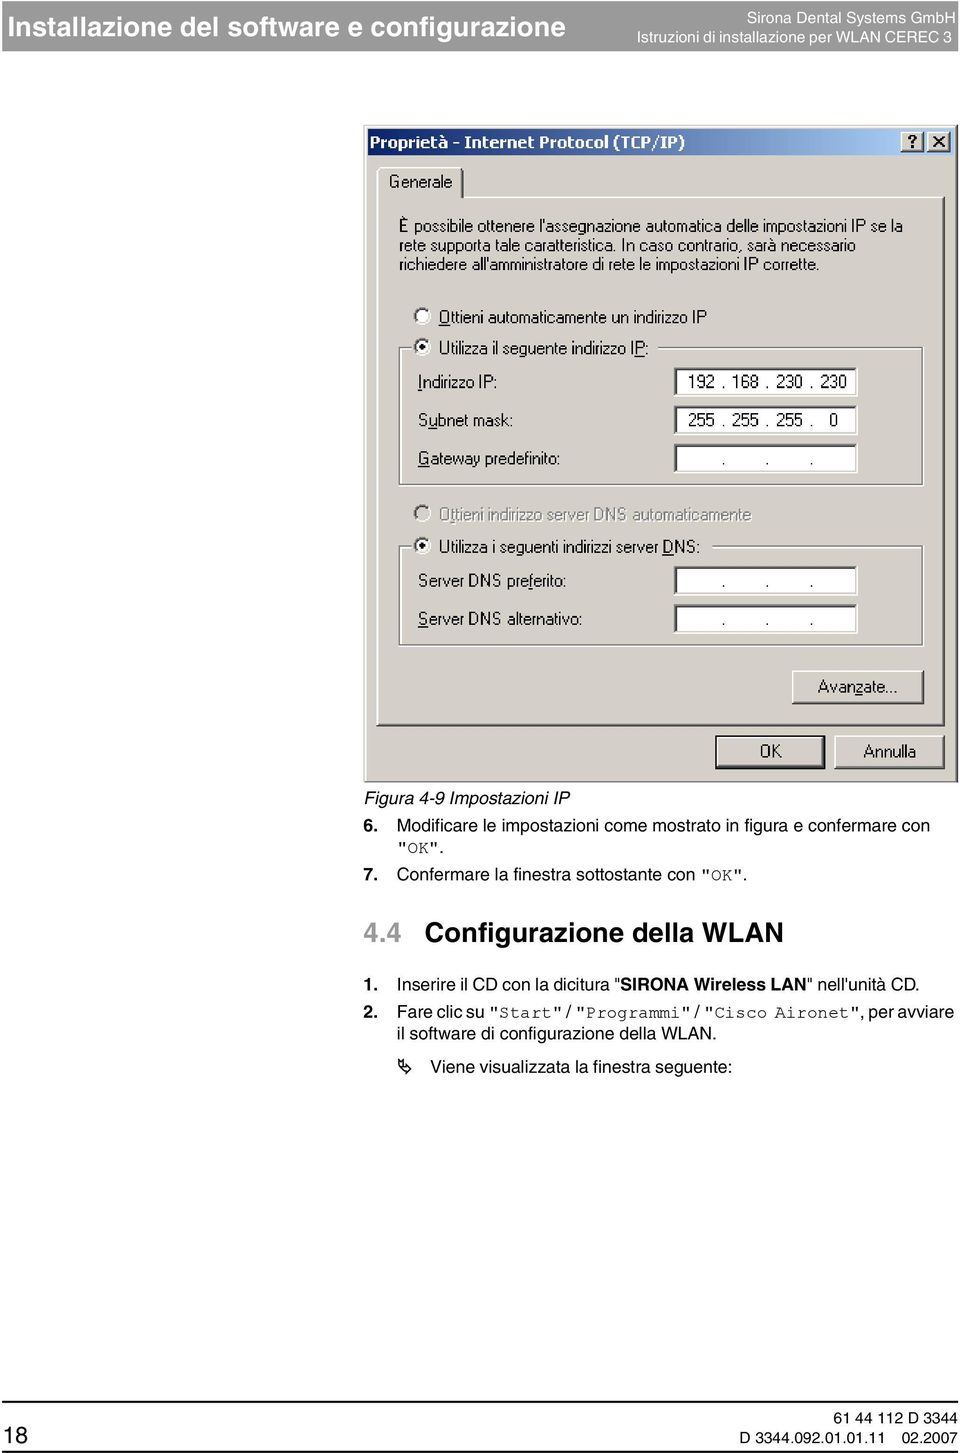 4 Configurazione della WLAN 1. Inserire il CD con la dicitura "SIRONA Wireless LAN" nell'unità CD. 2.